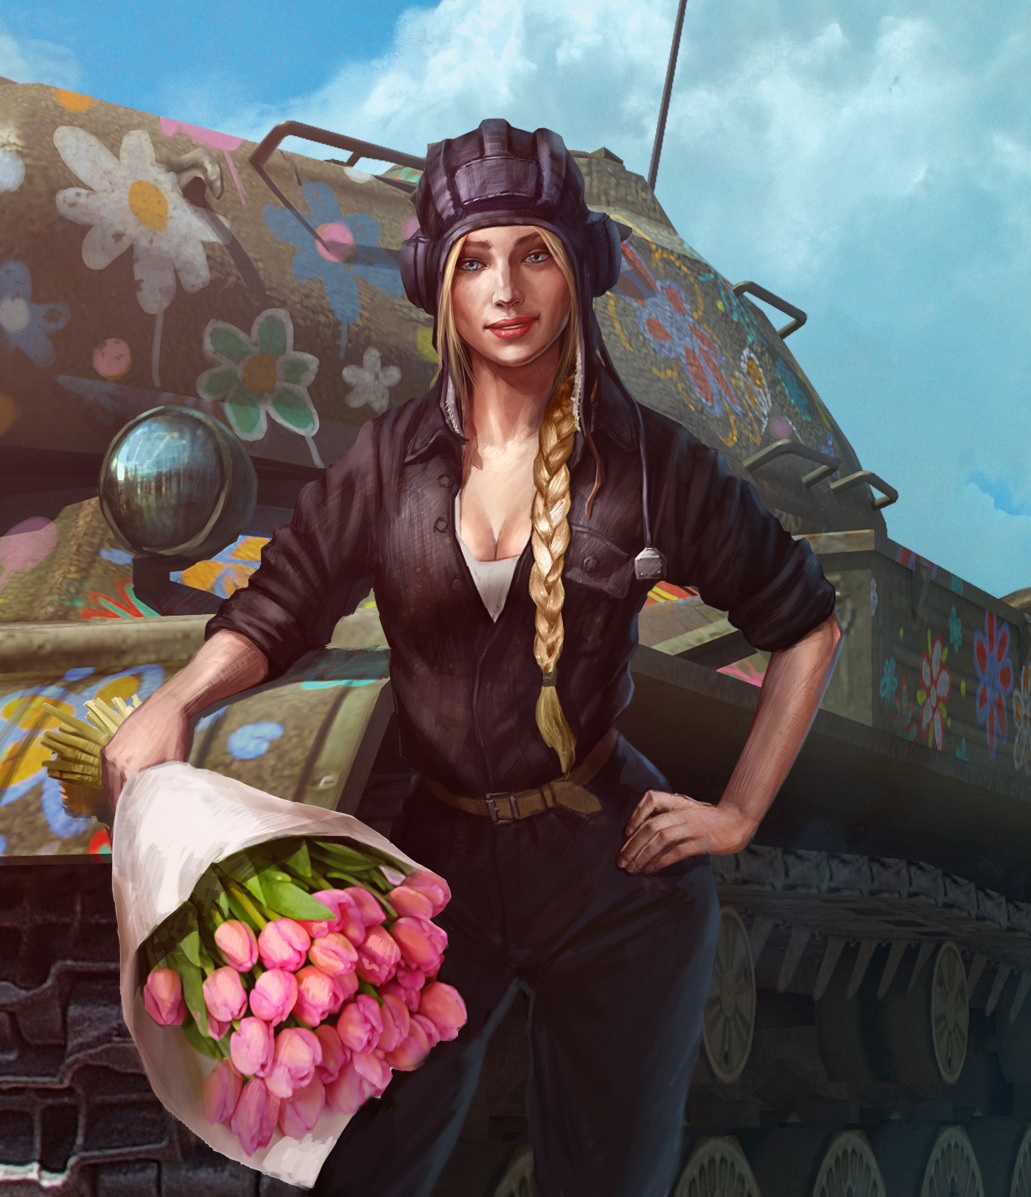 World of Tanks - В танки играют и женщины тоже